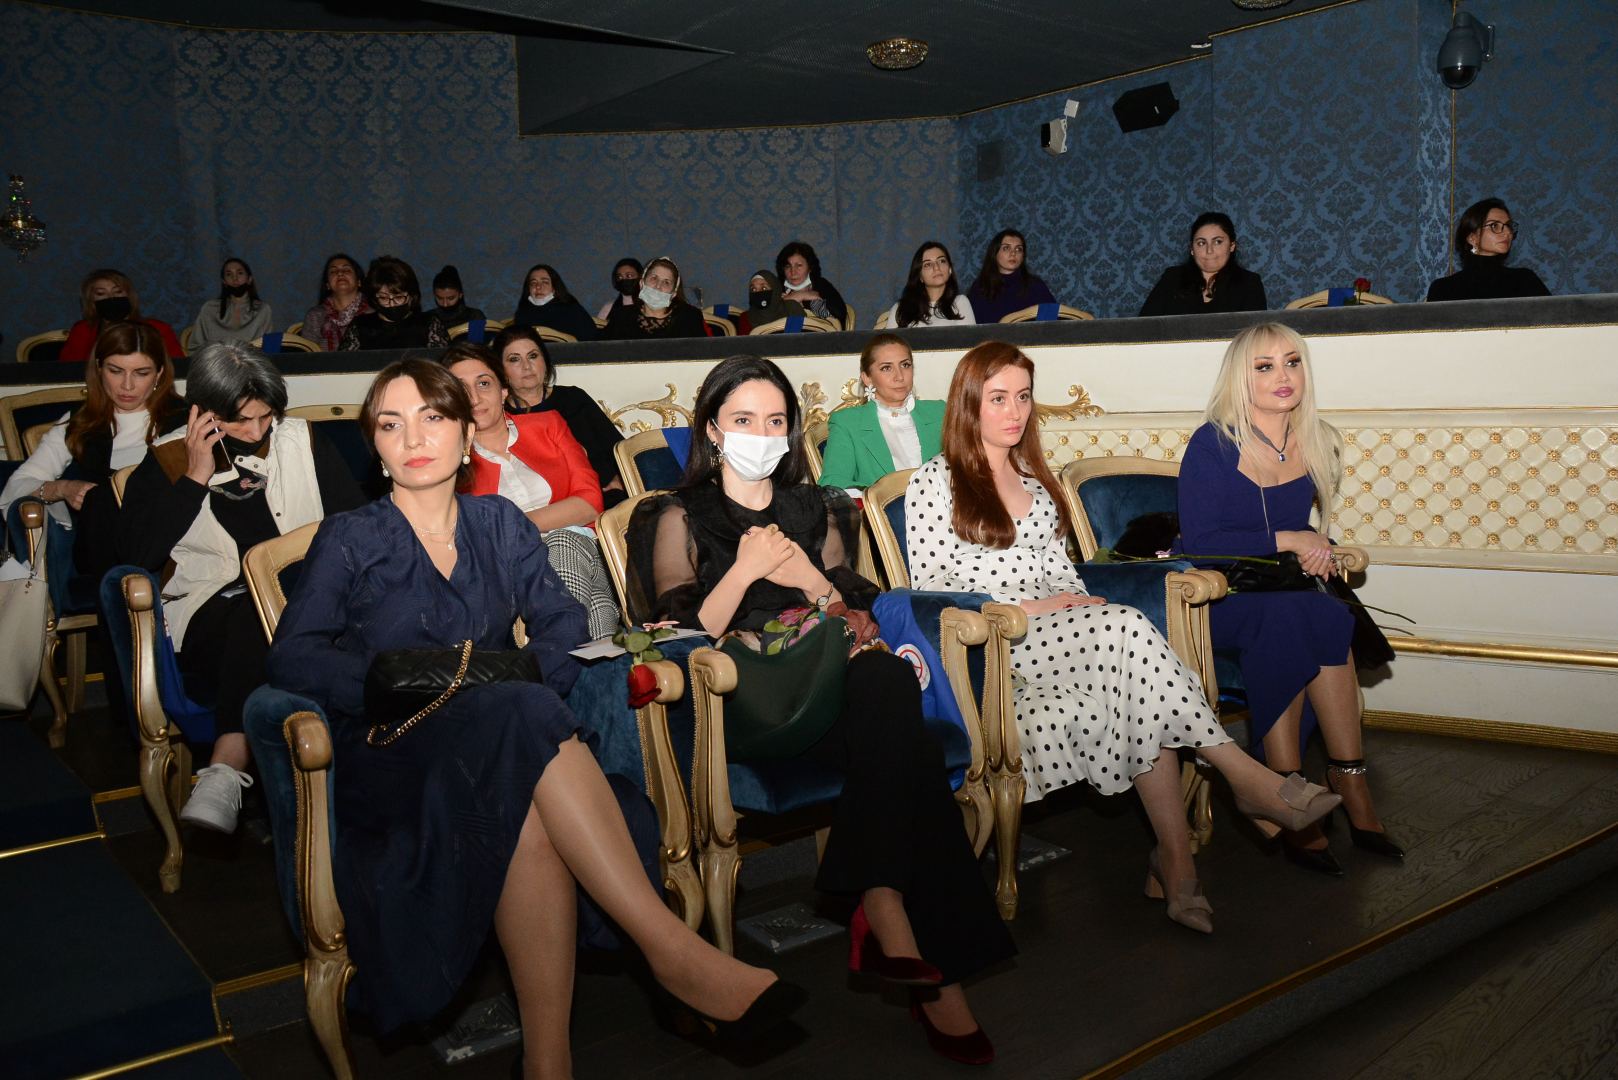 Женщины отдыхают, а мужчины создают праздник! Концерт в Баку, посвященный 8 Марта (ФОТО)